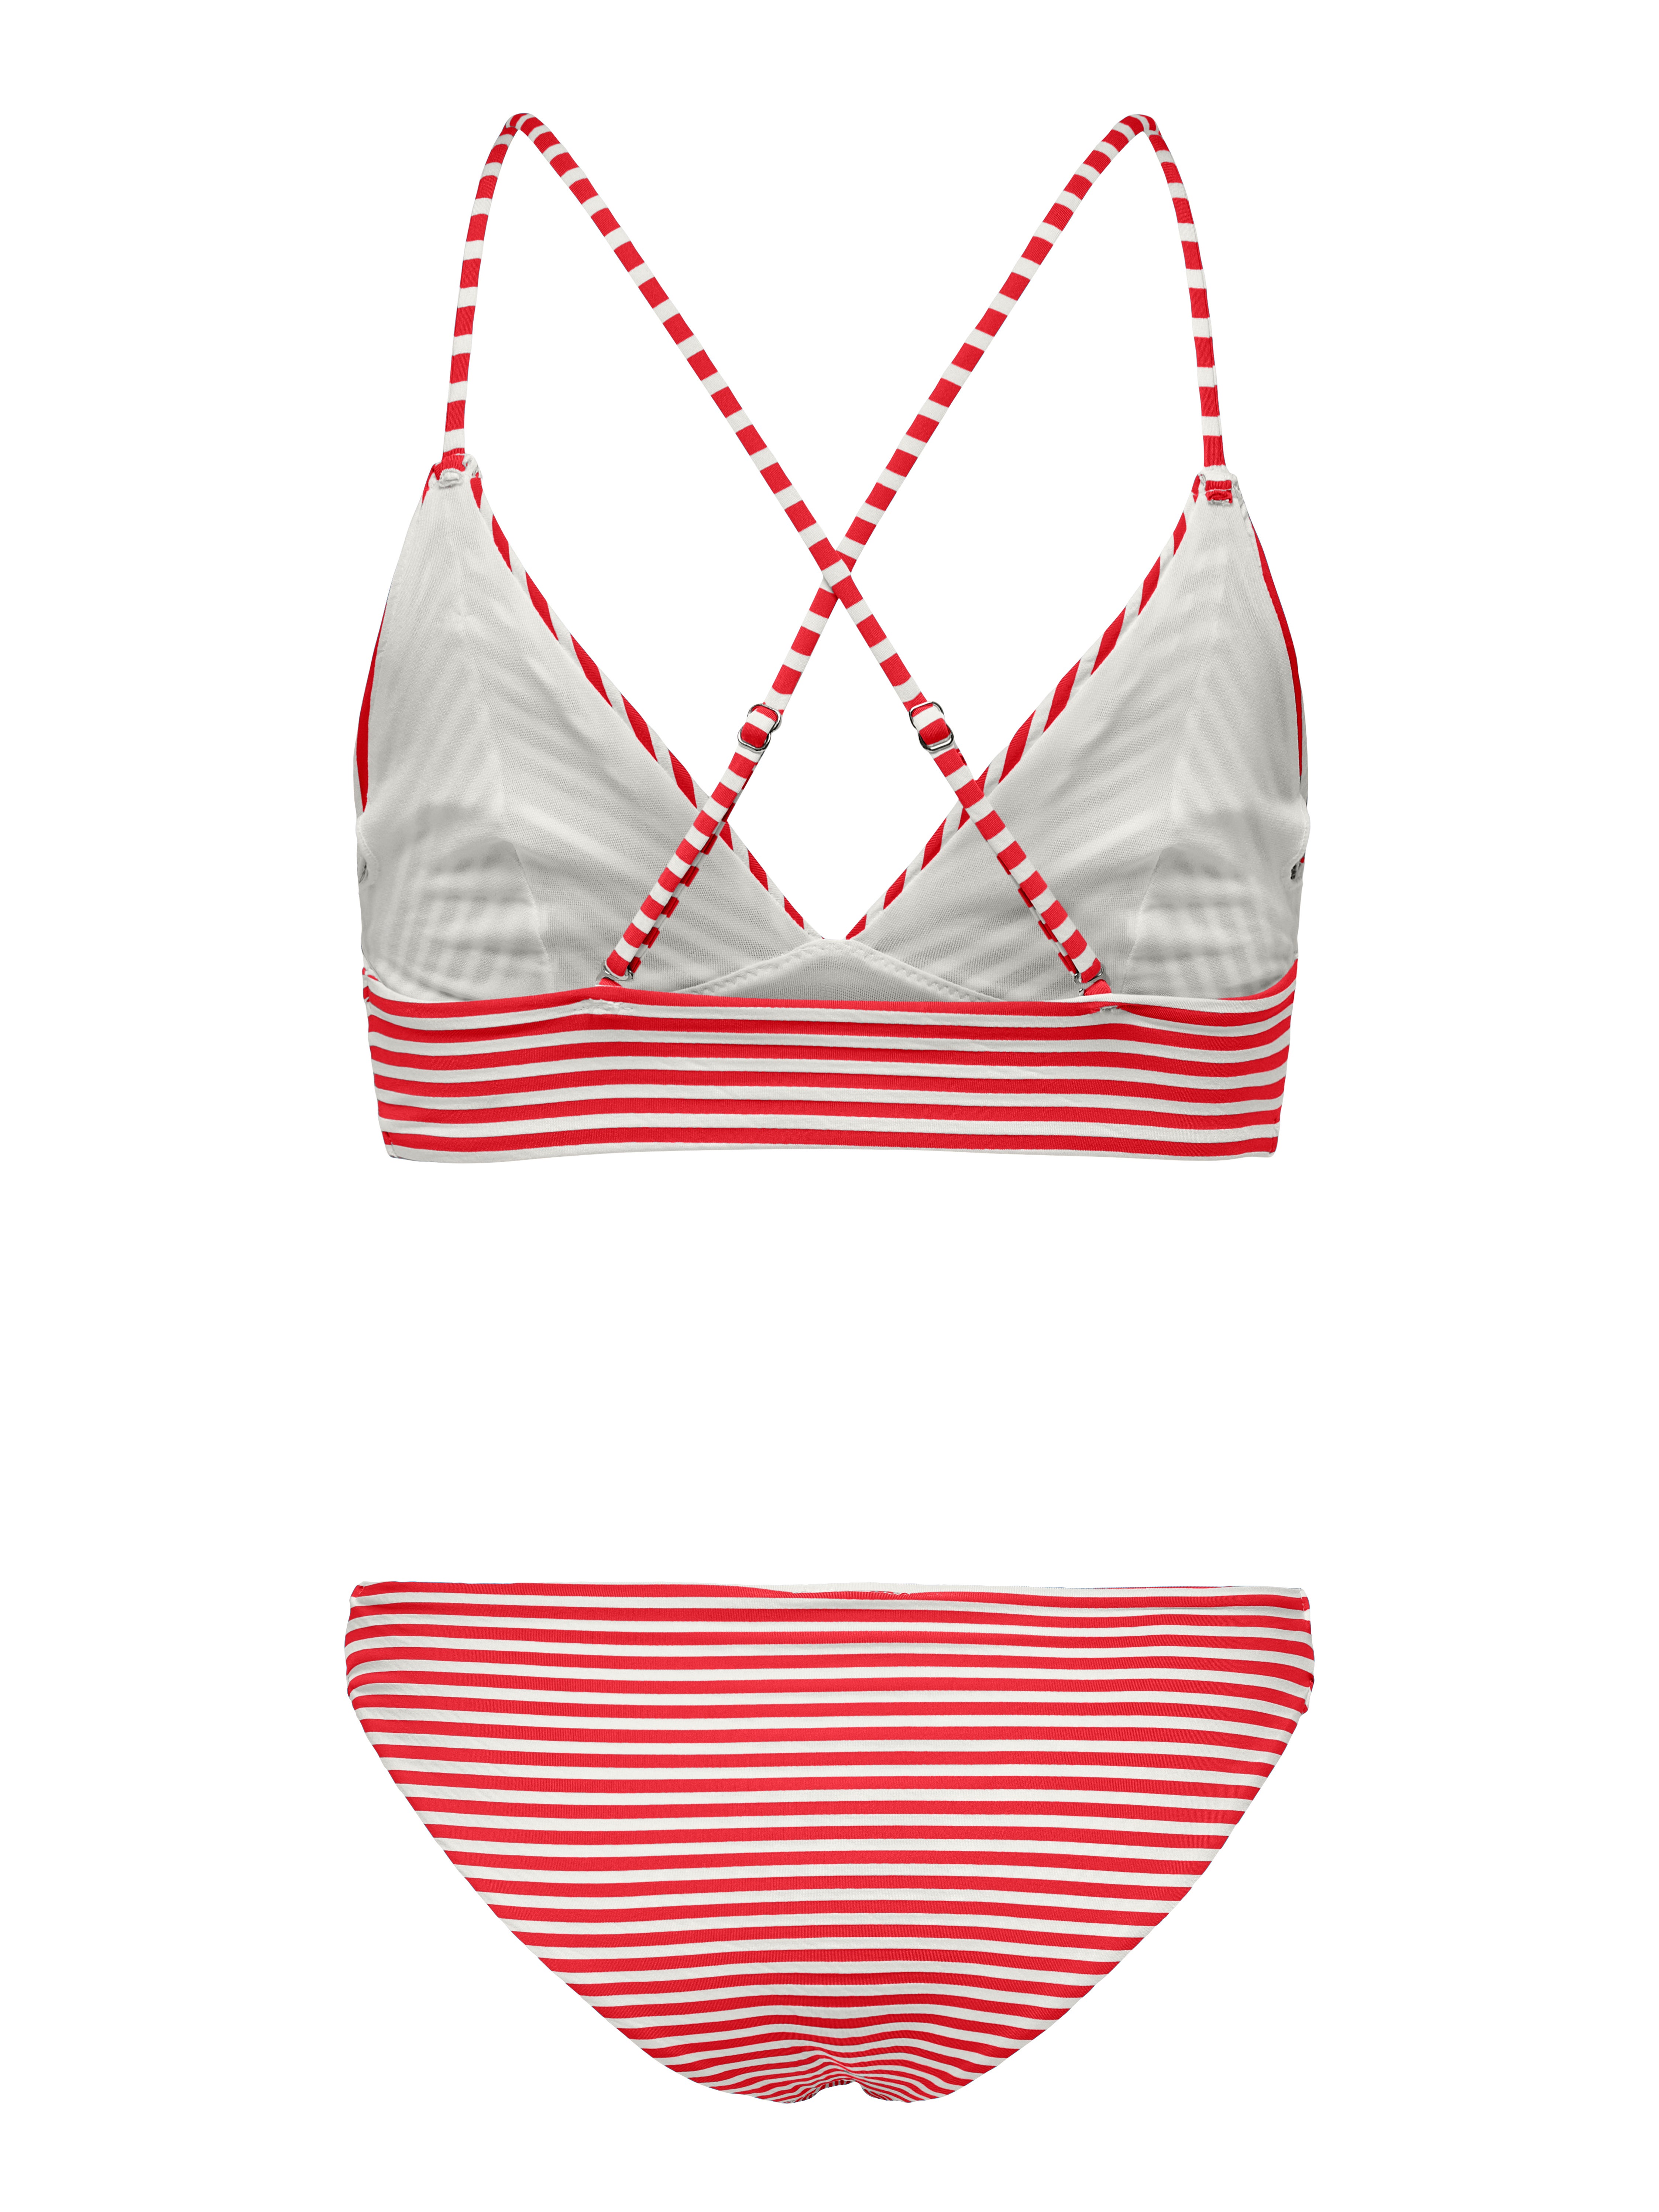 dauw JEP Theseus Triangle Bikini set with 30 discount! | ONLY®